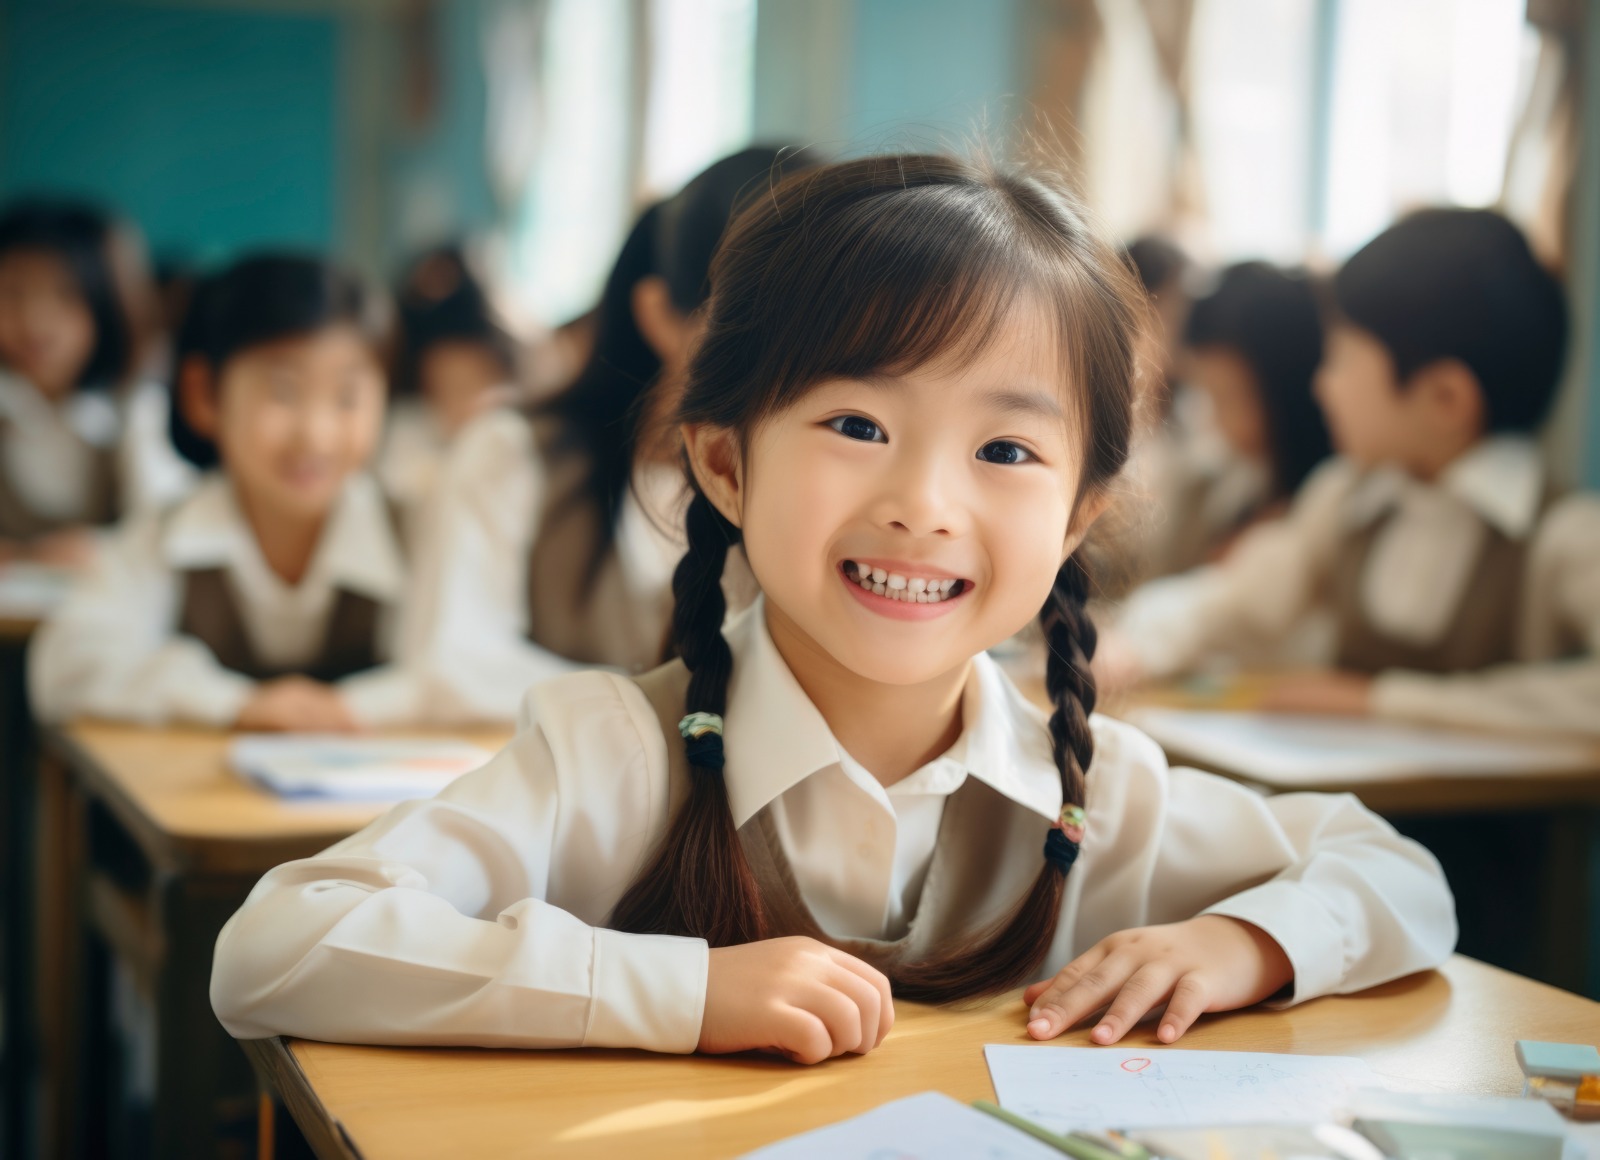 Pentingnya Pendidikan Karakter Bagi Anak Berikut 5 Hal yang Wajib Ditanamkan Pada Anak Usia Dini di Sekolah